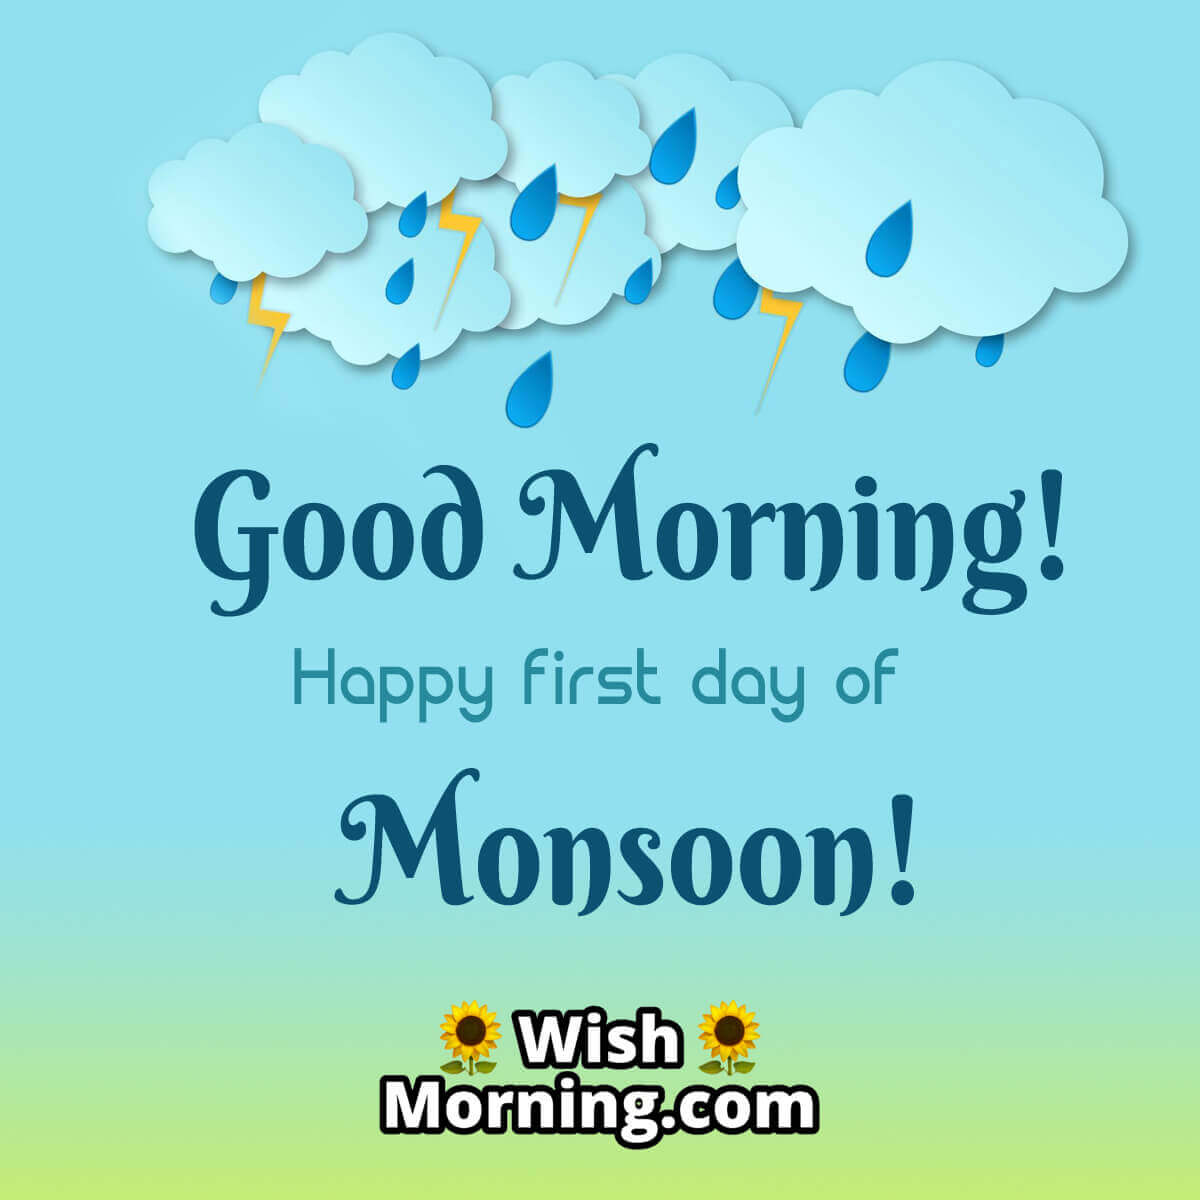 Good Morning Monsoon Greeting